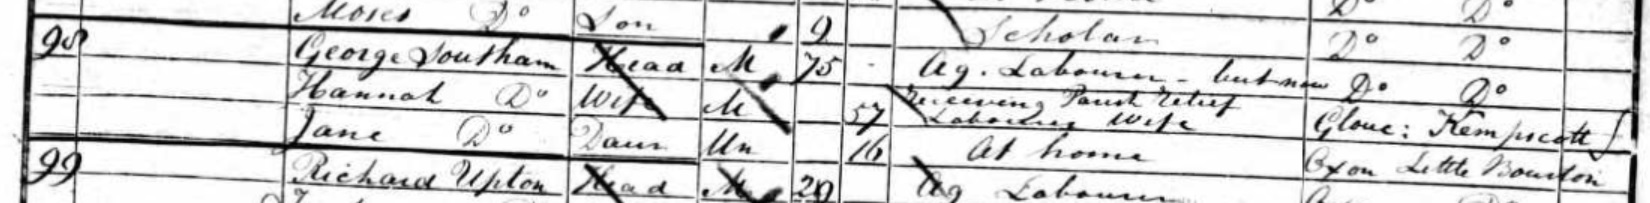 1851 census Bourton